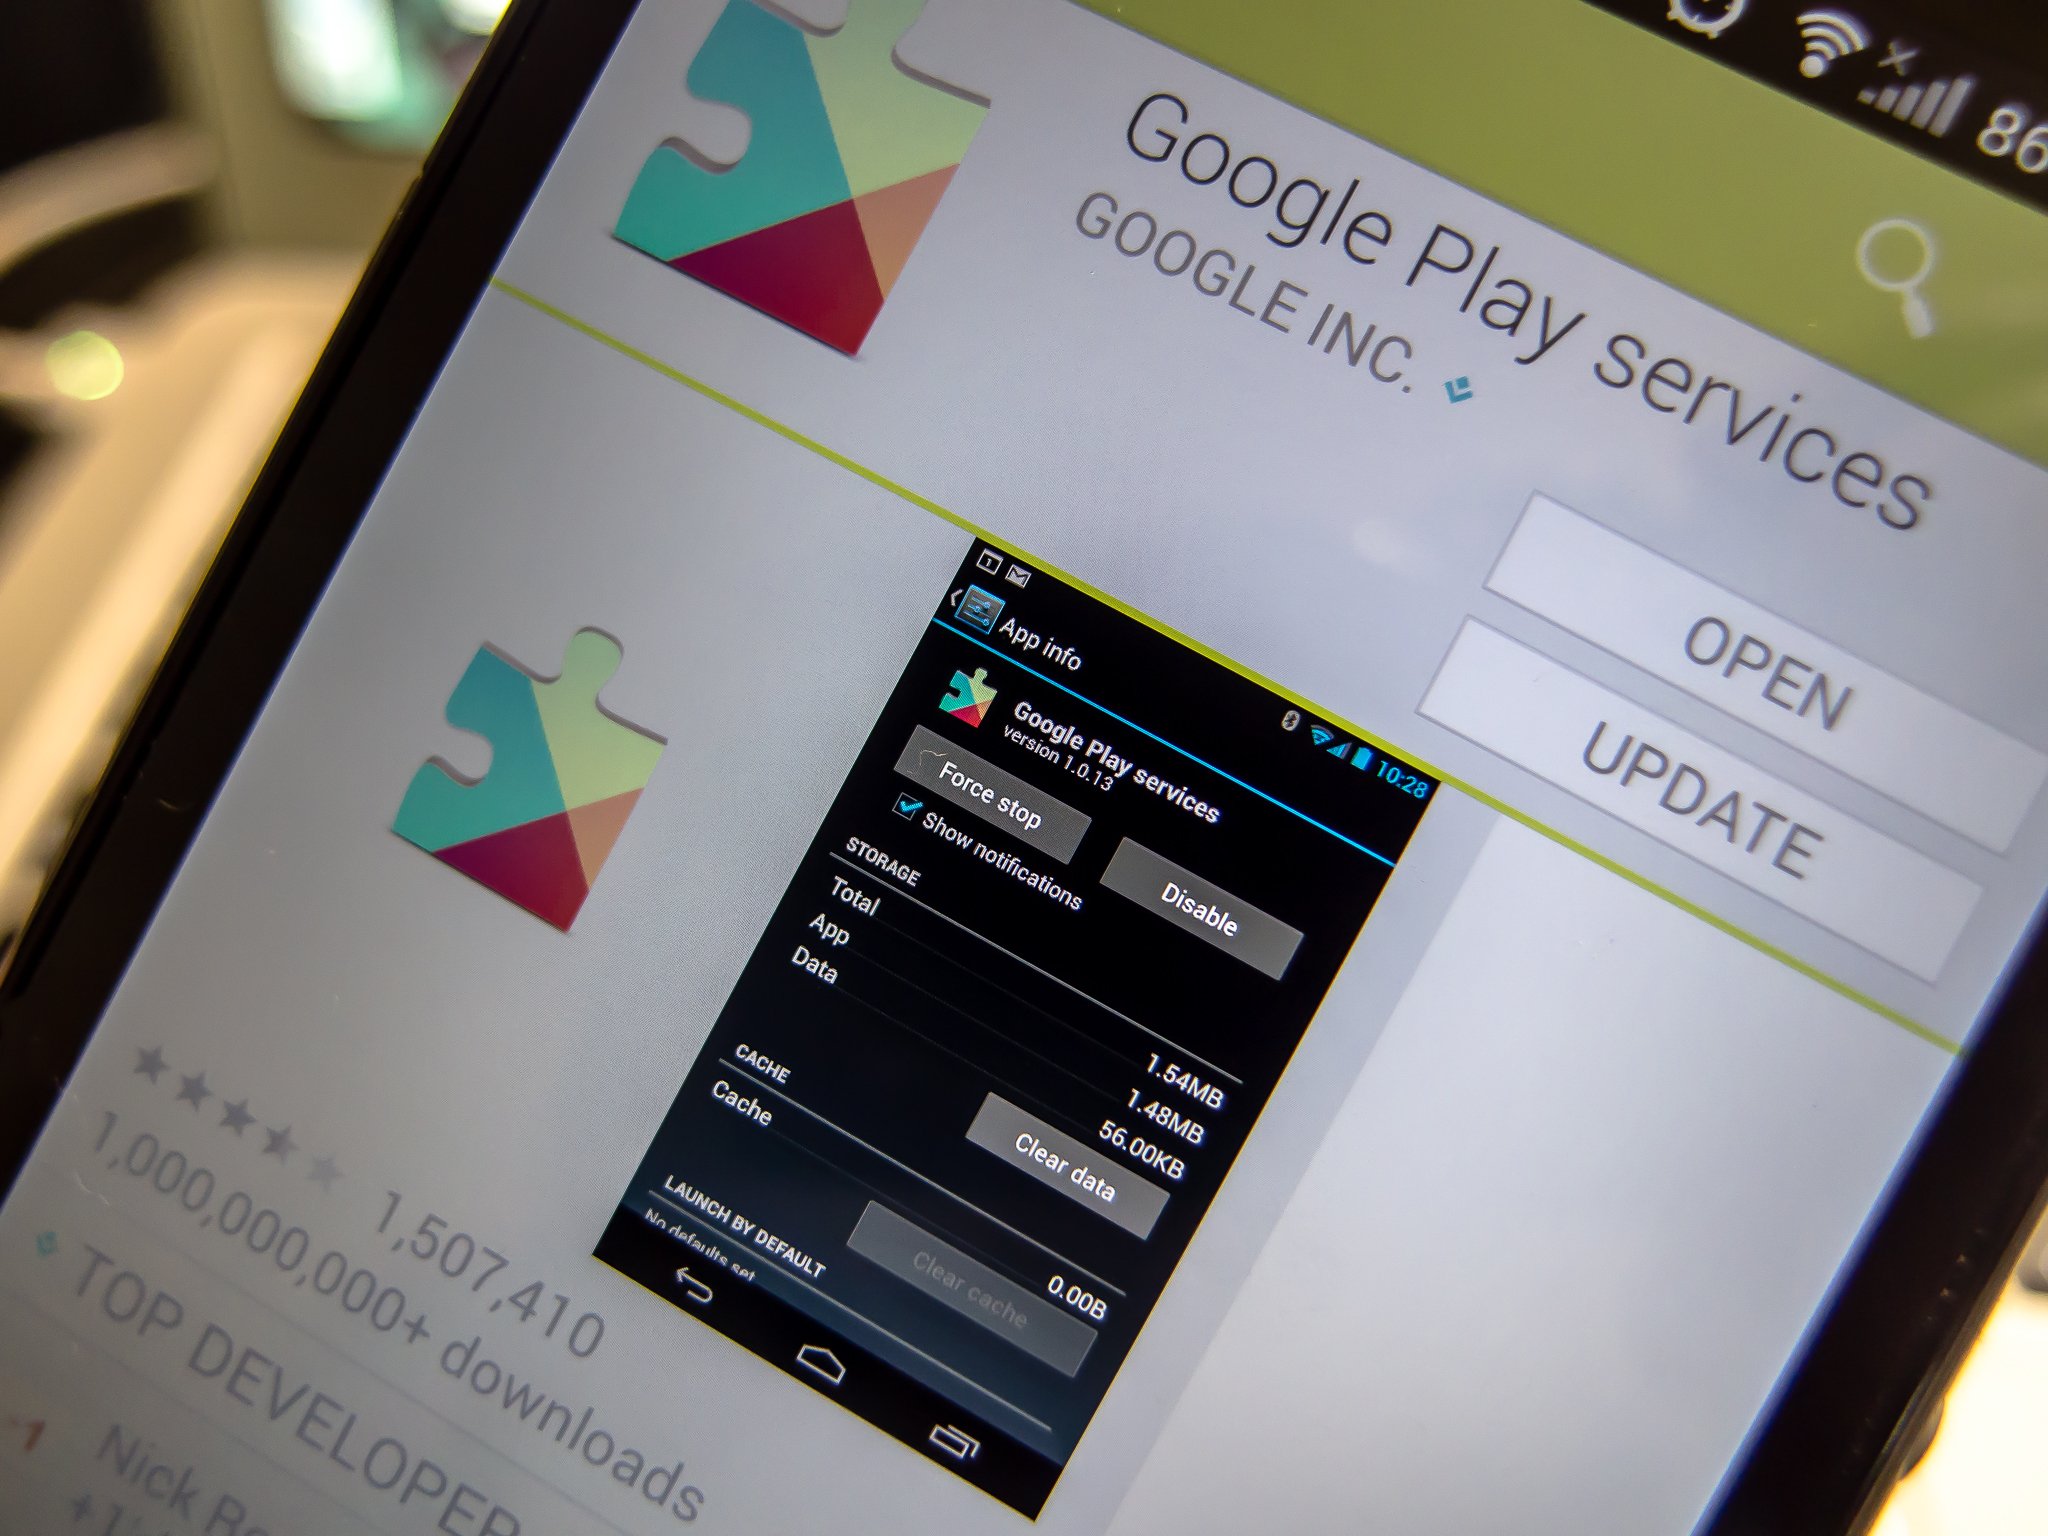 Gms google play. Google Play. Сервисы гугл плей. Обновить гугл плей. В приложении "сервисы Google Play".